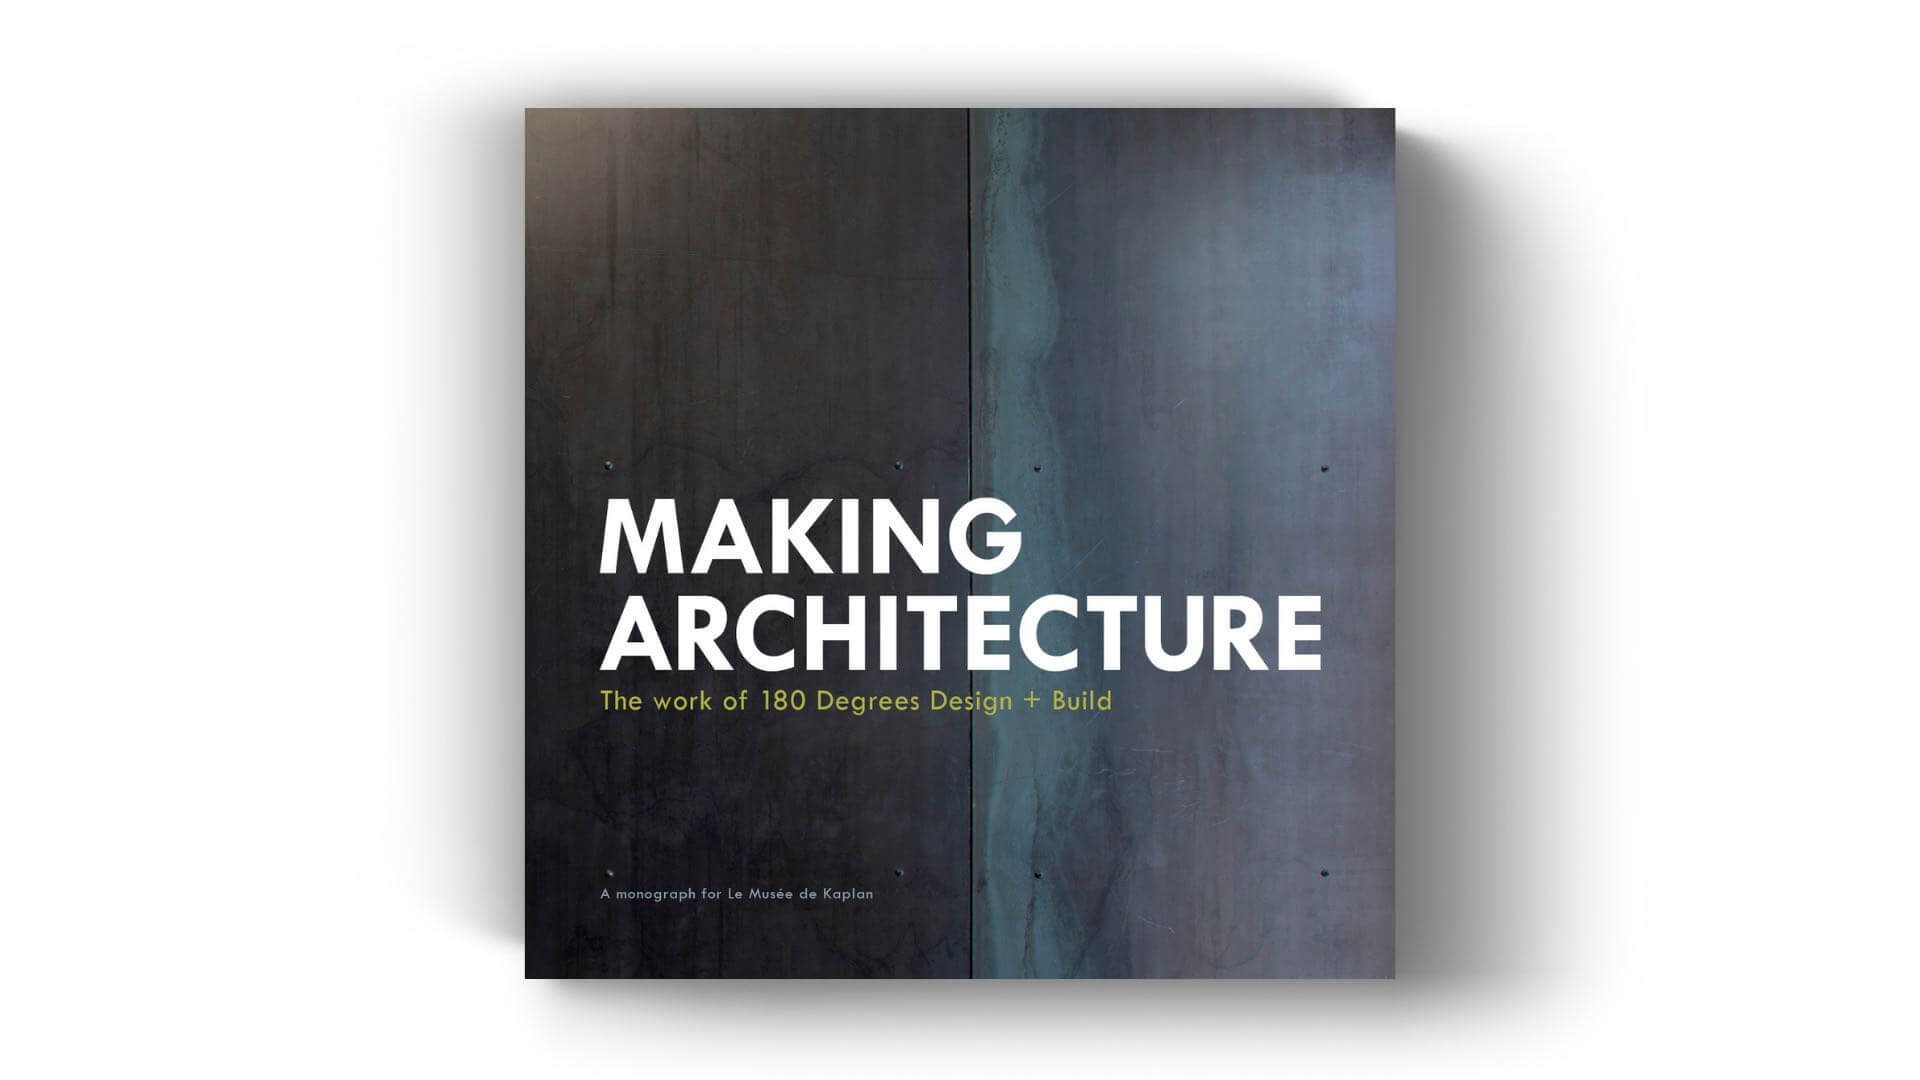 180 Degrees Design + Build Announces Pub|Books